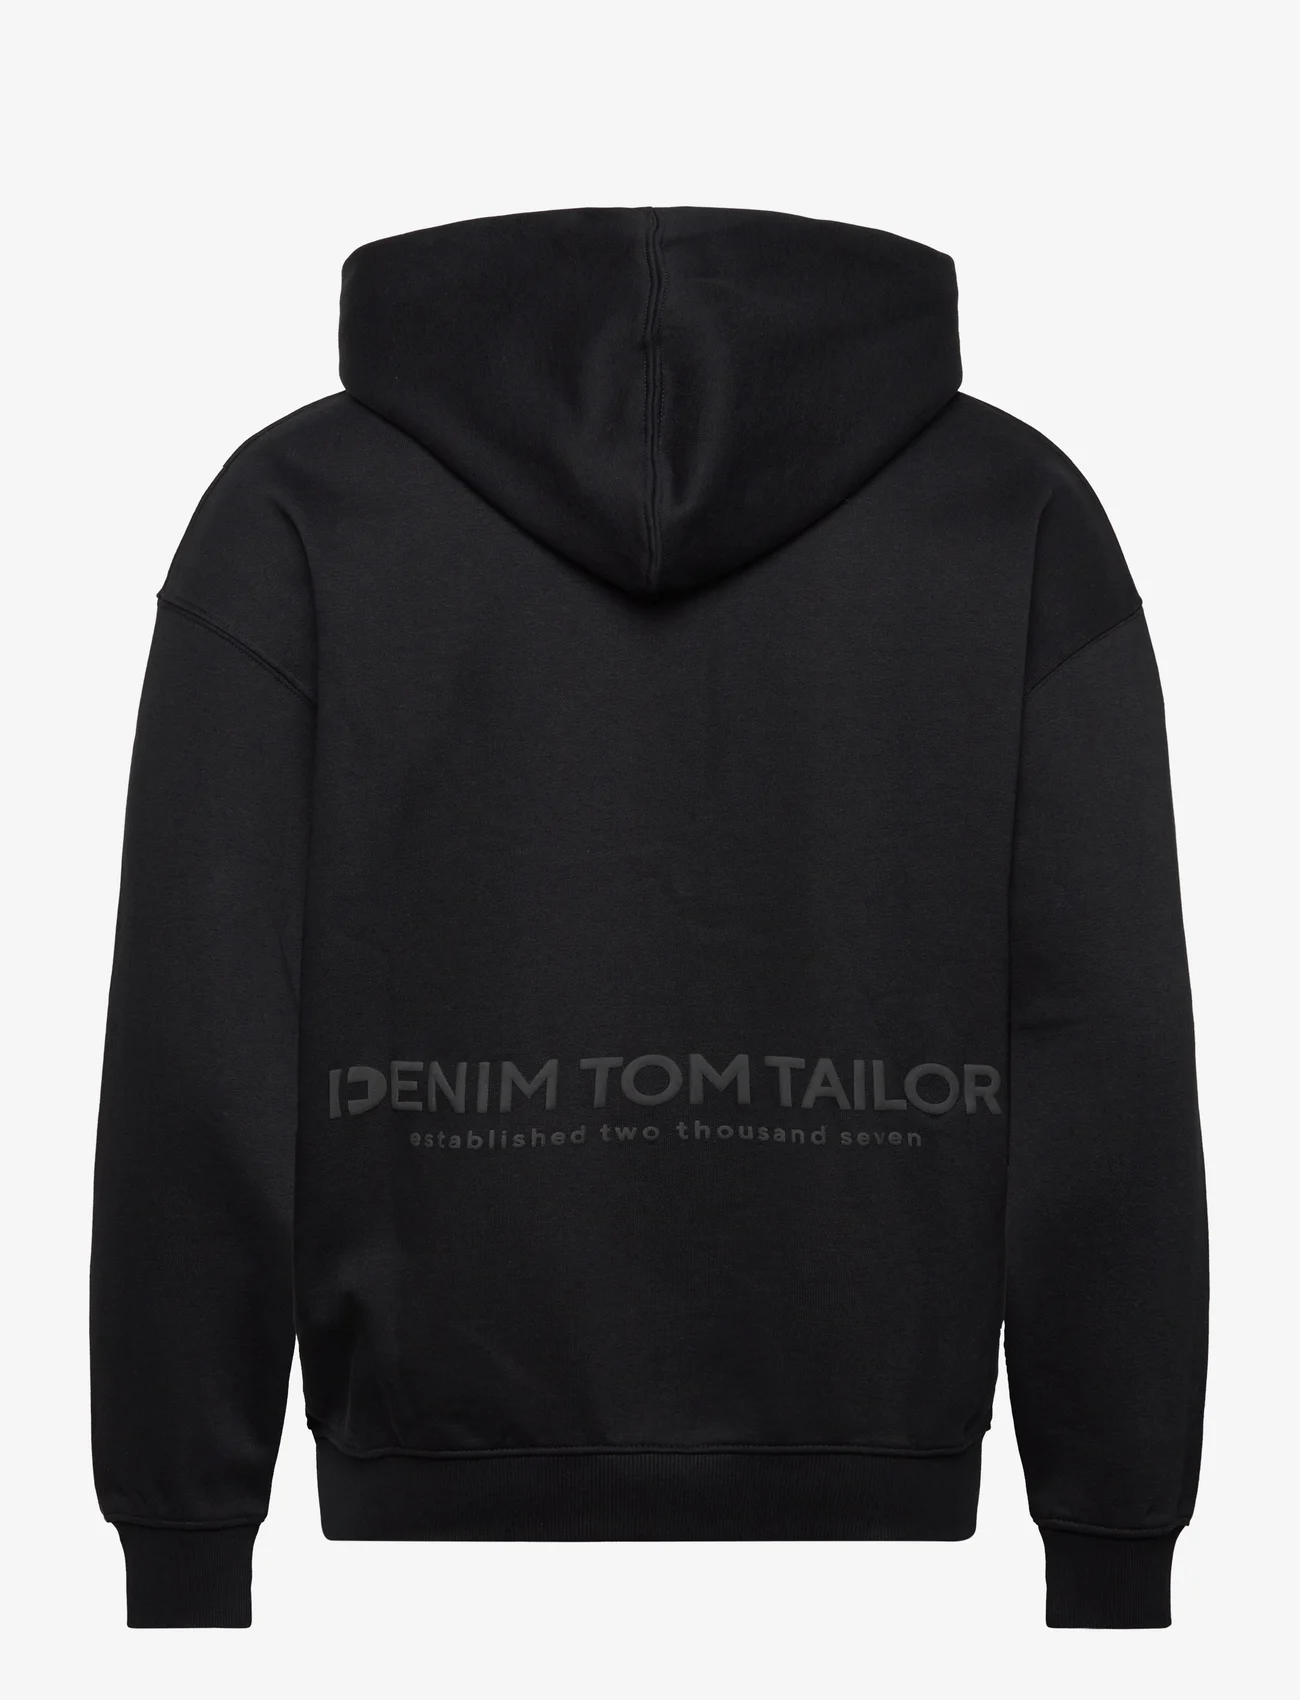 Tom Tailor - relaxed printed hoodie jacket - hoodies - black - 1